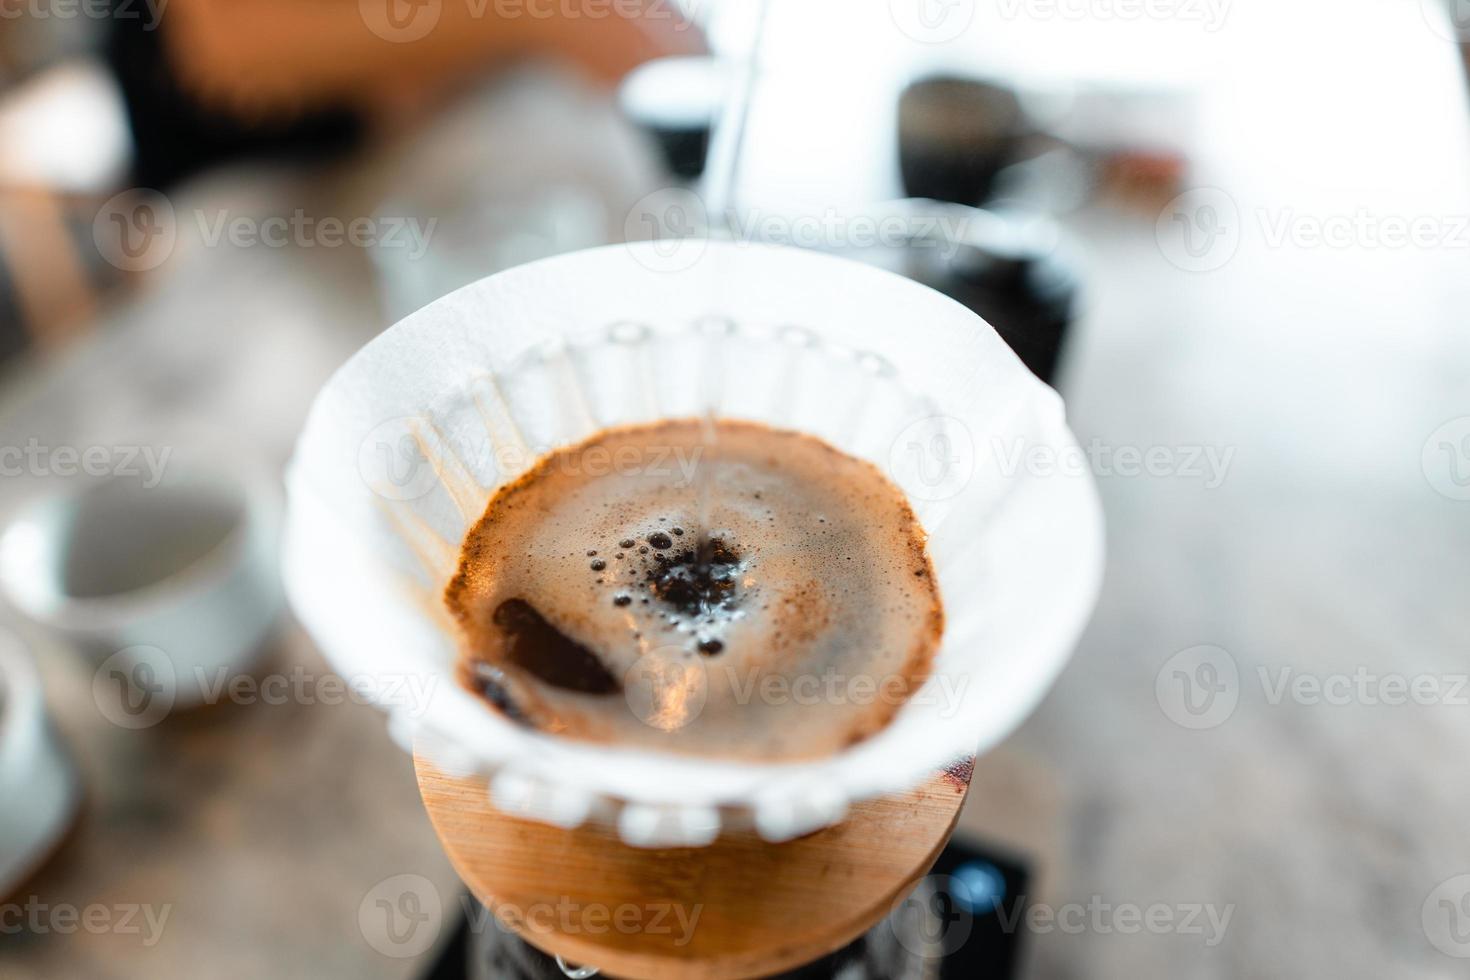 gotear café, verter agua caliente en la tetera en el café, preparar café foto